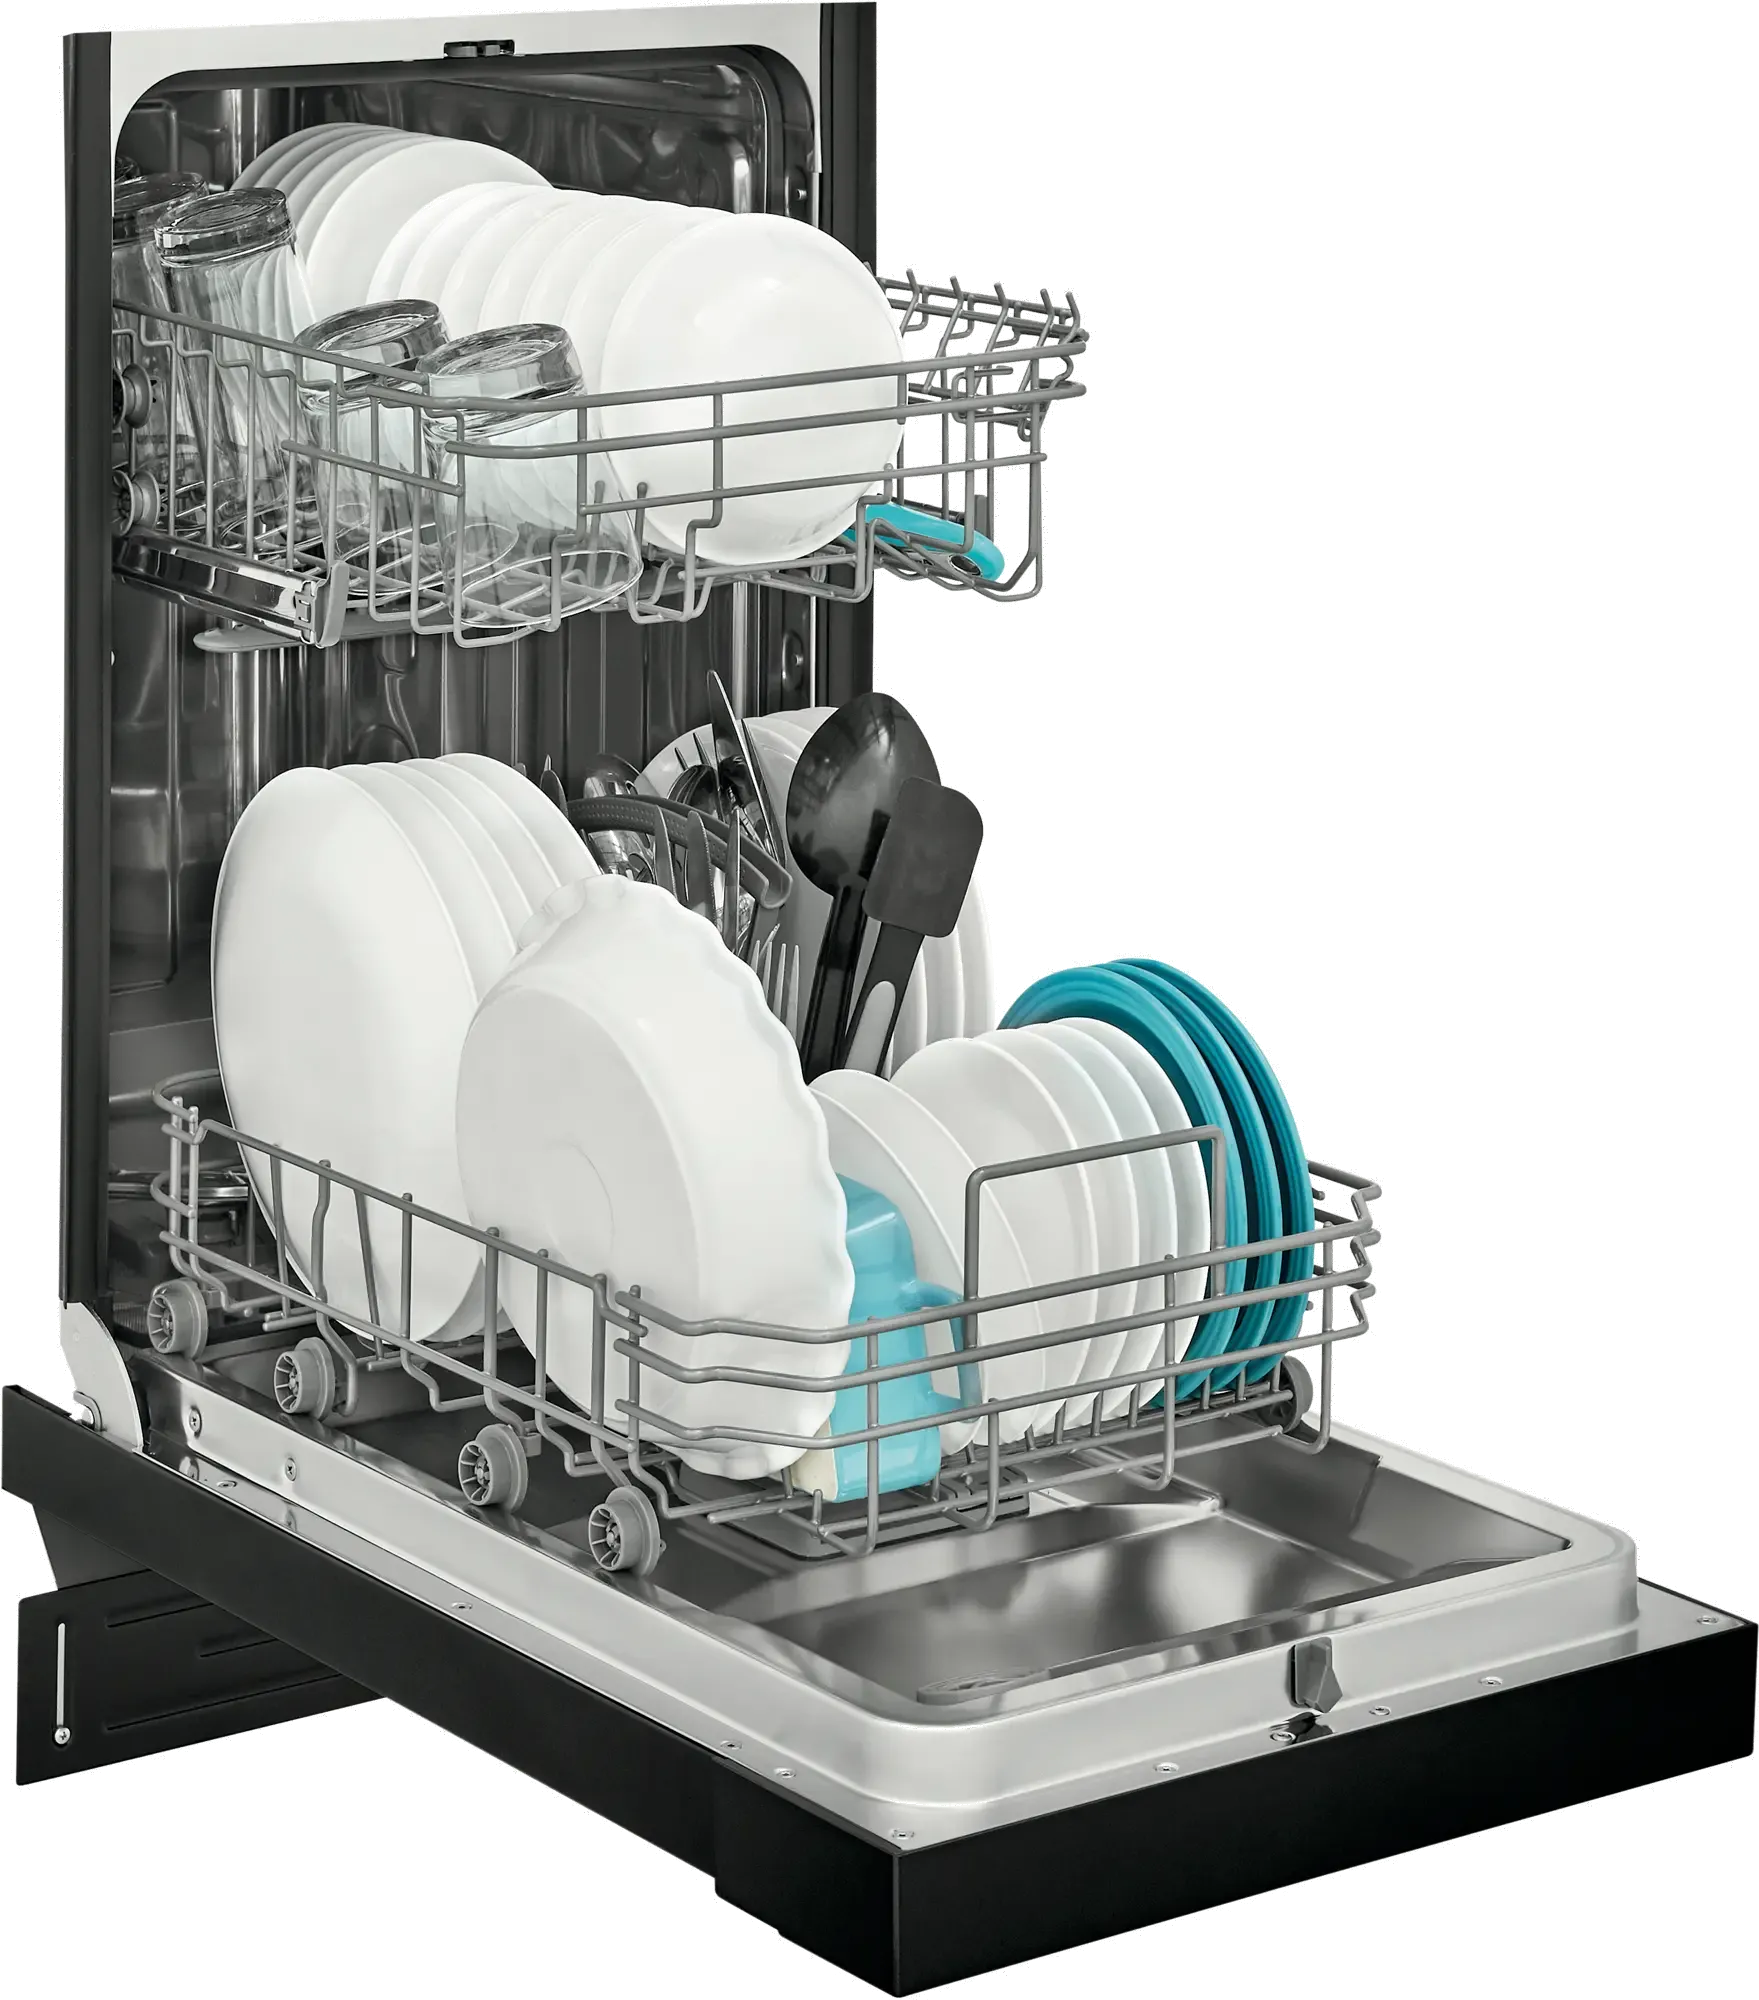 Frigidaire Compact Dishwasher FFBD1831UB